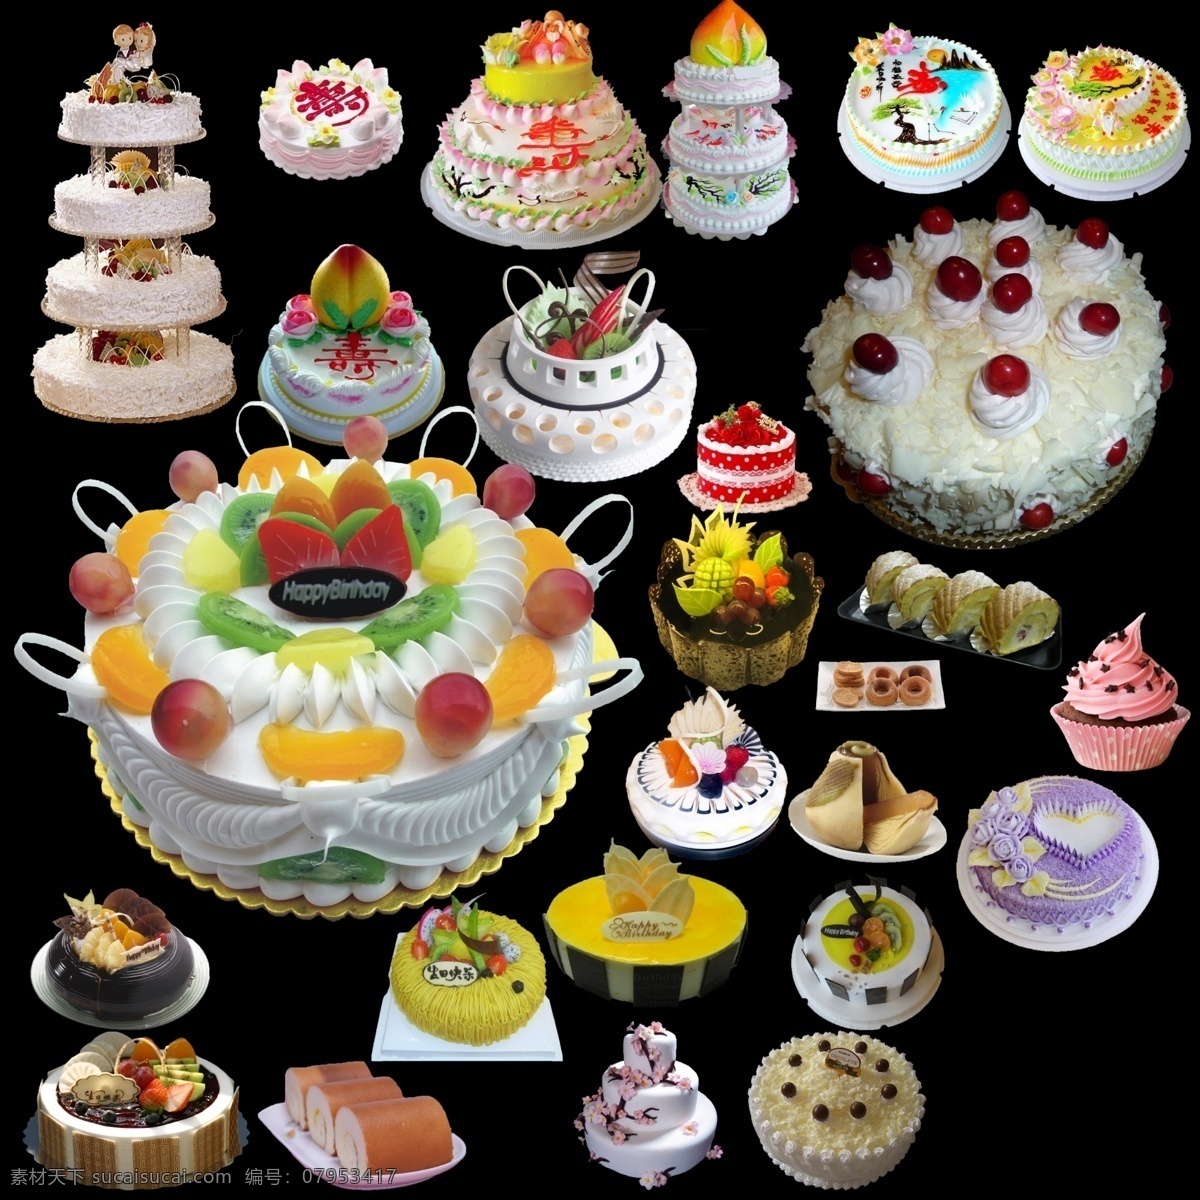 生日蛋糕 分层 蛋糕 糕点 结婚蛋糕 水果蛋糕 甜品 源文件 寿 长寿蛋糕 寿桃蛋糕 psd源文件 餐饮素材